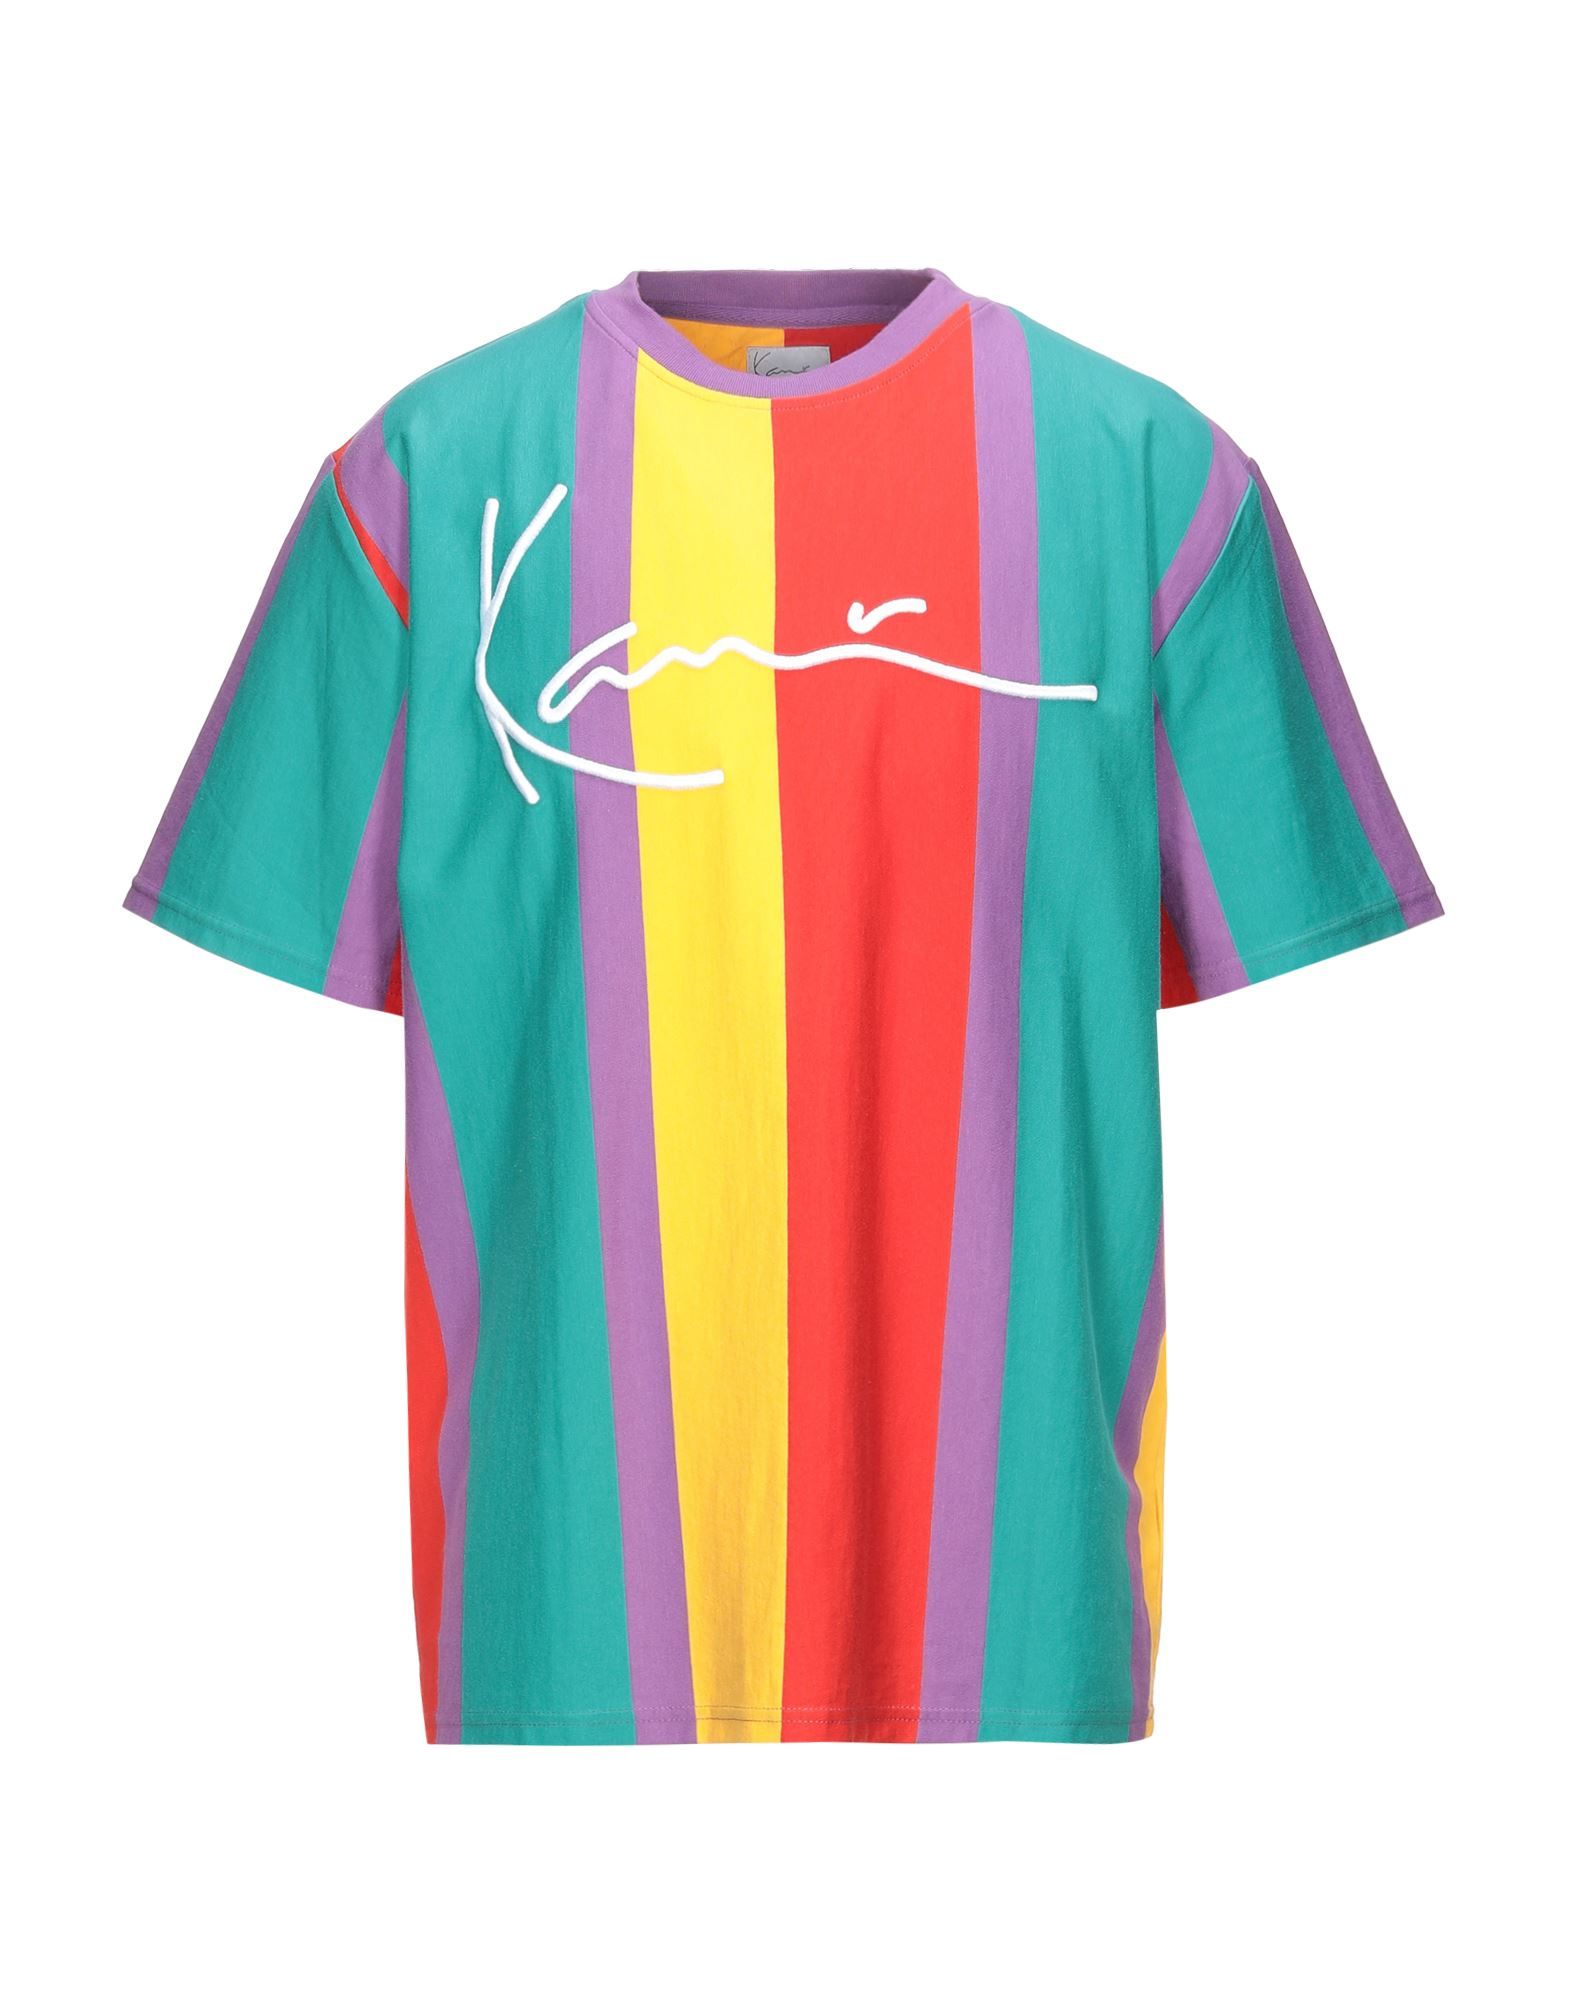 KANI T-shirts | YOOX (US)